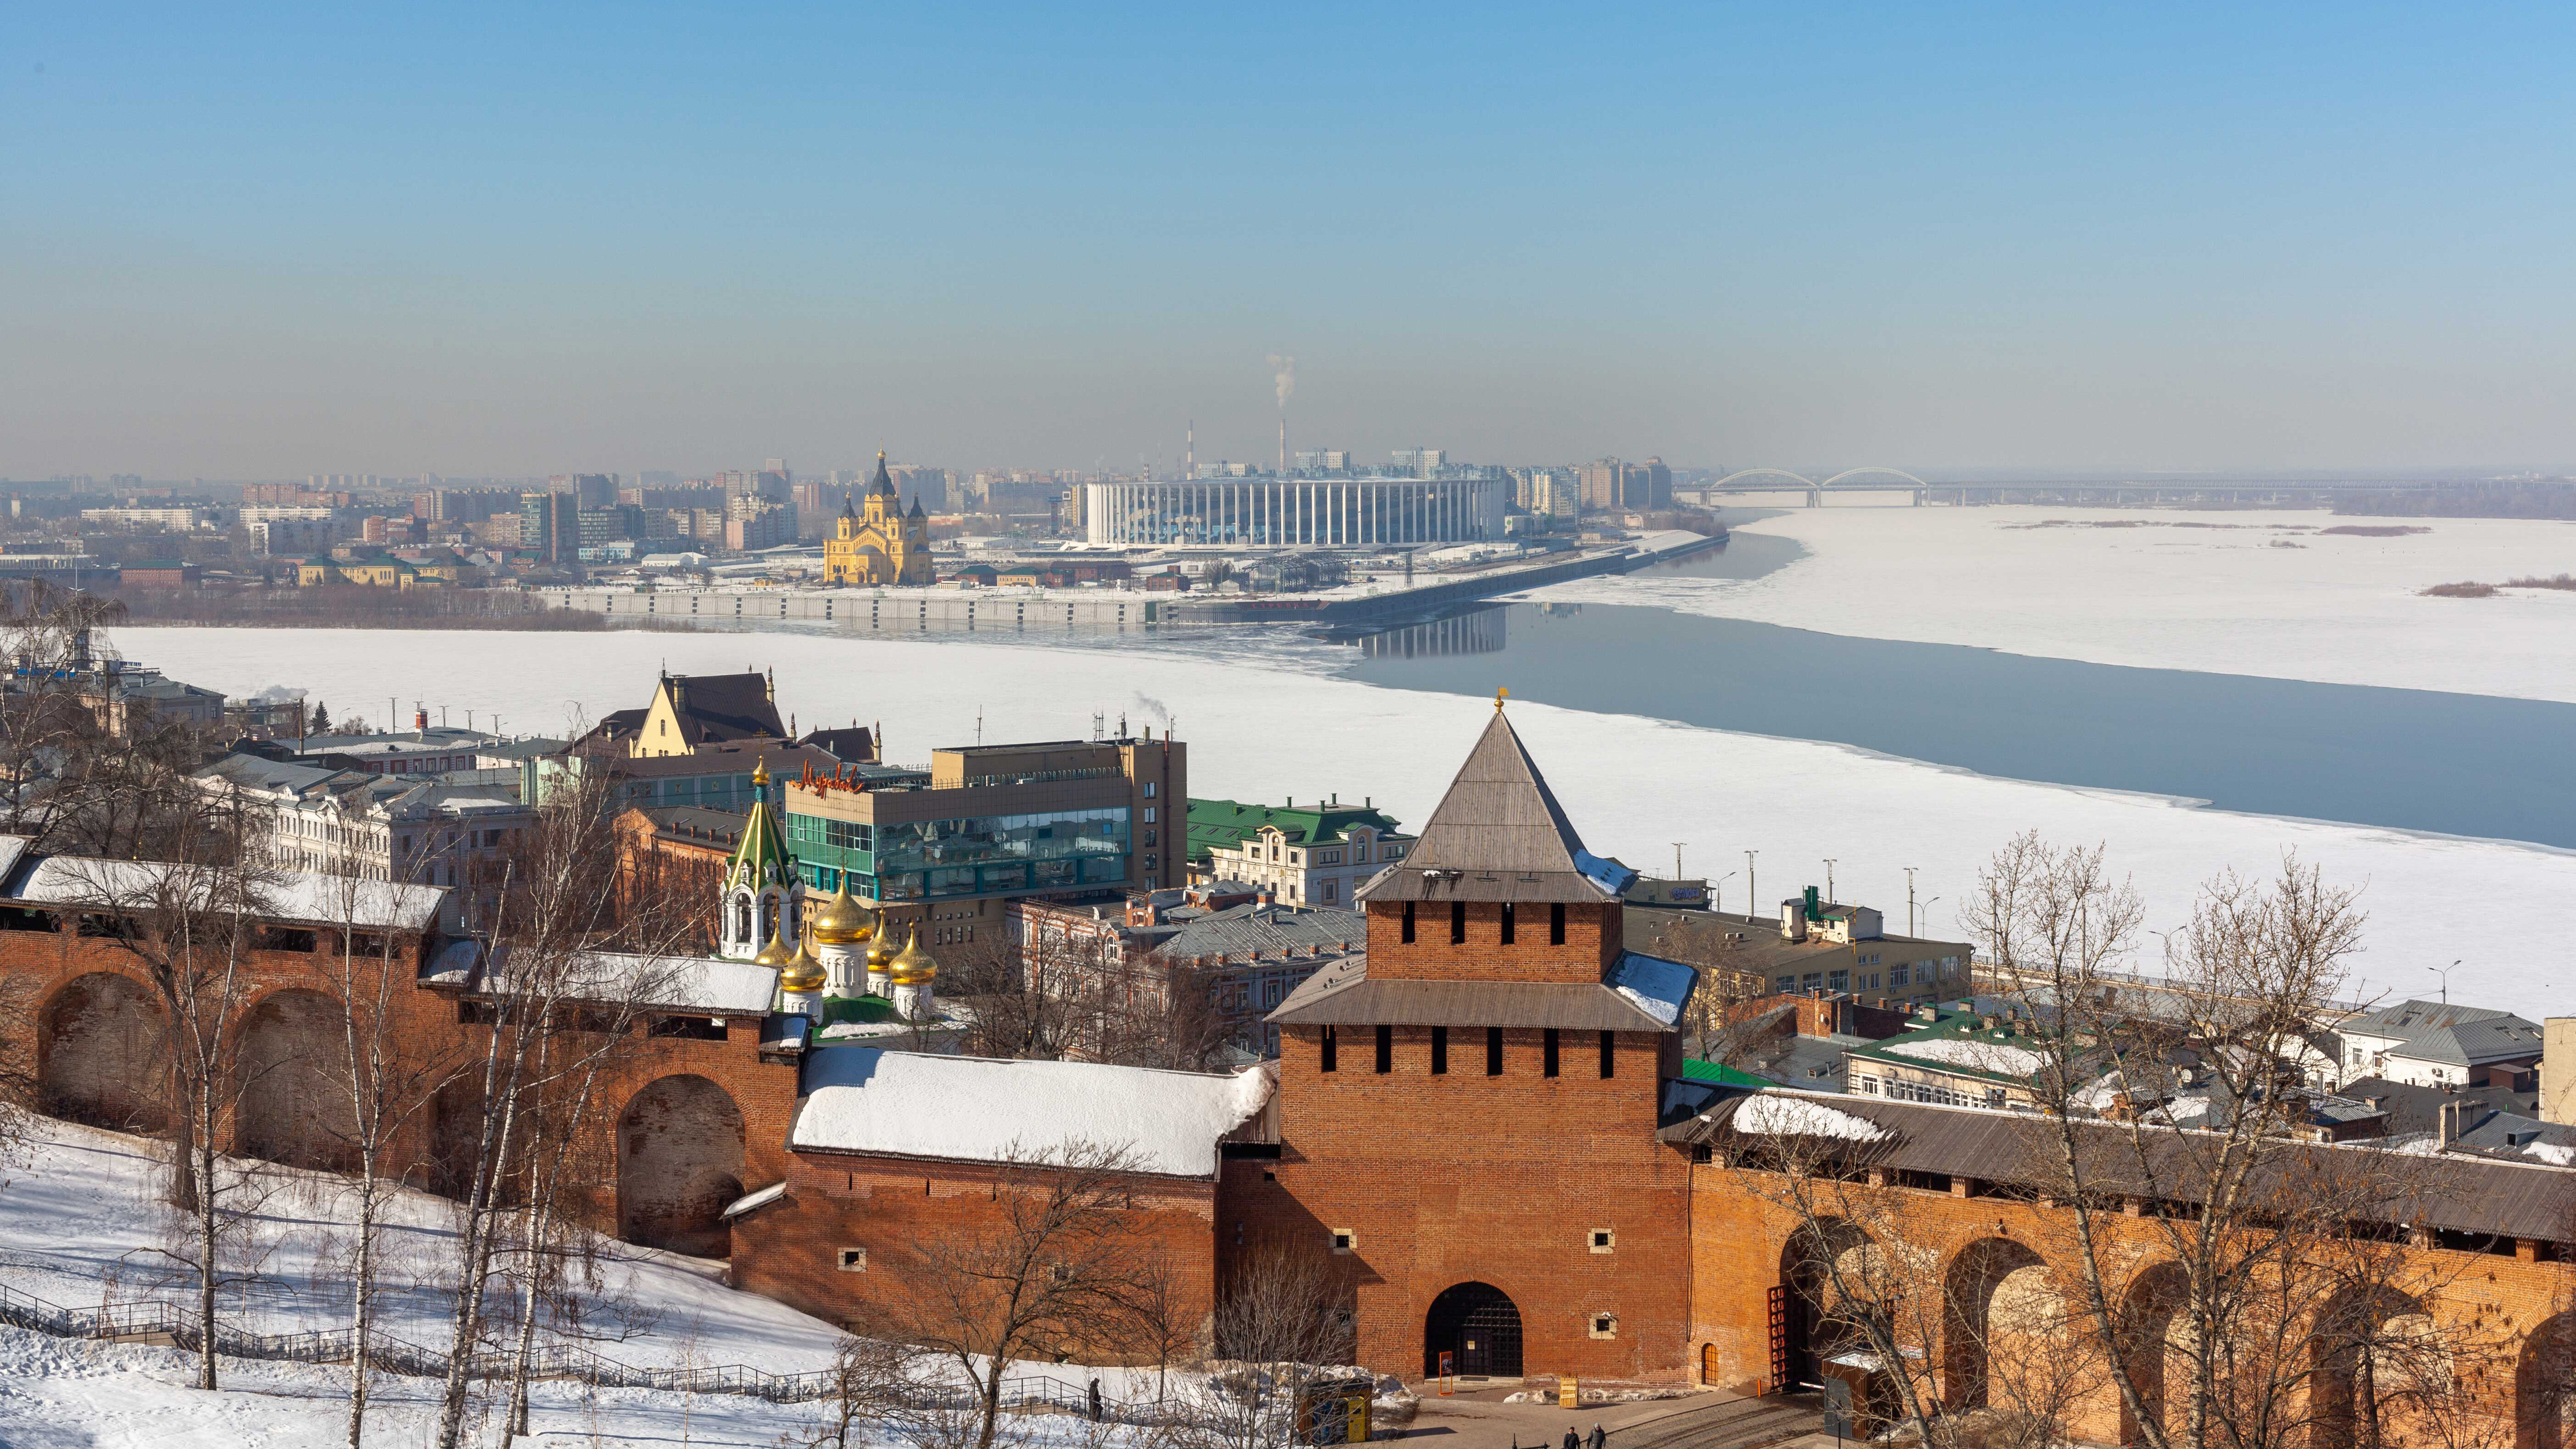 Нижний Новгород зимой: фуникулёр над замёрзшей Волгой, роскошные особняки и Покровка в гирляндах